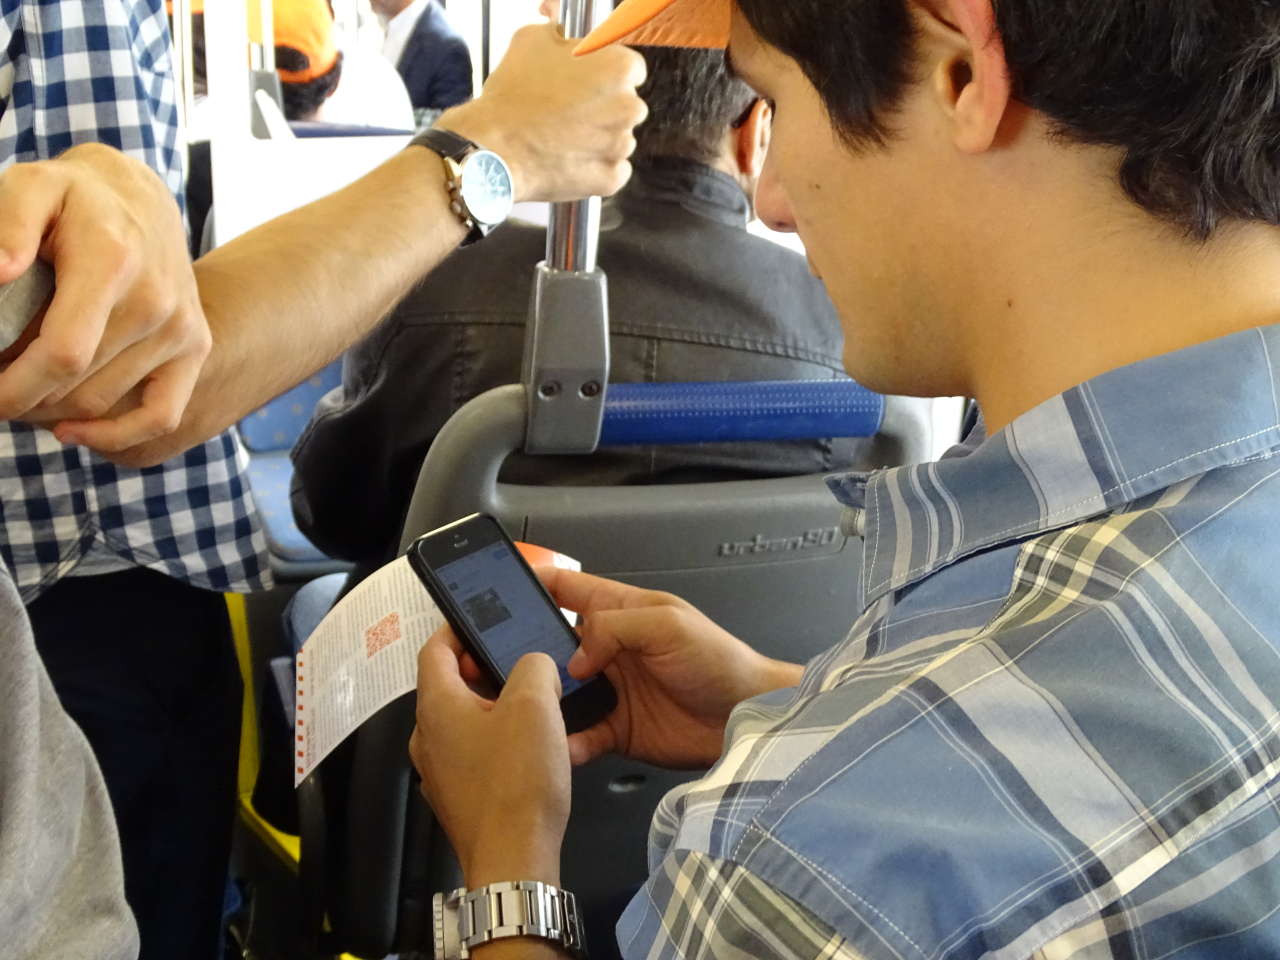 BakuBus will offer passengers free Wi-Fi